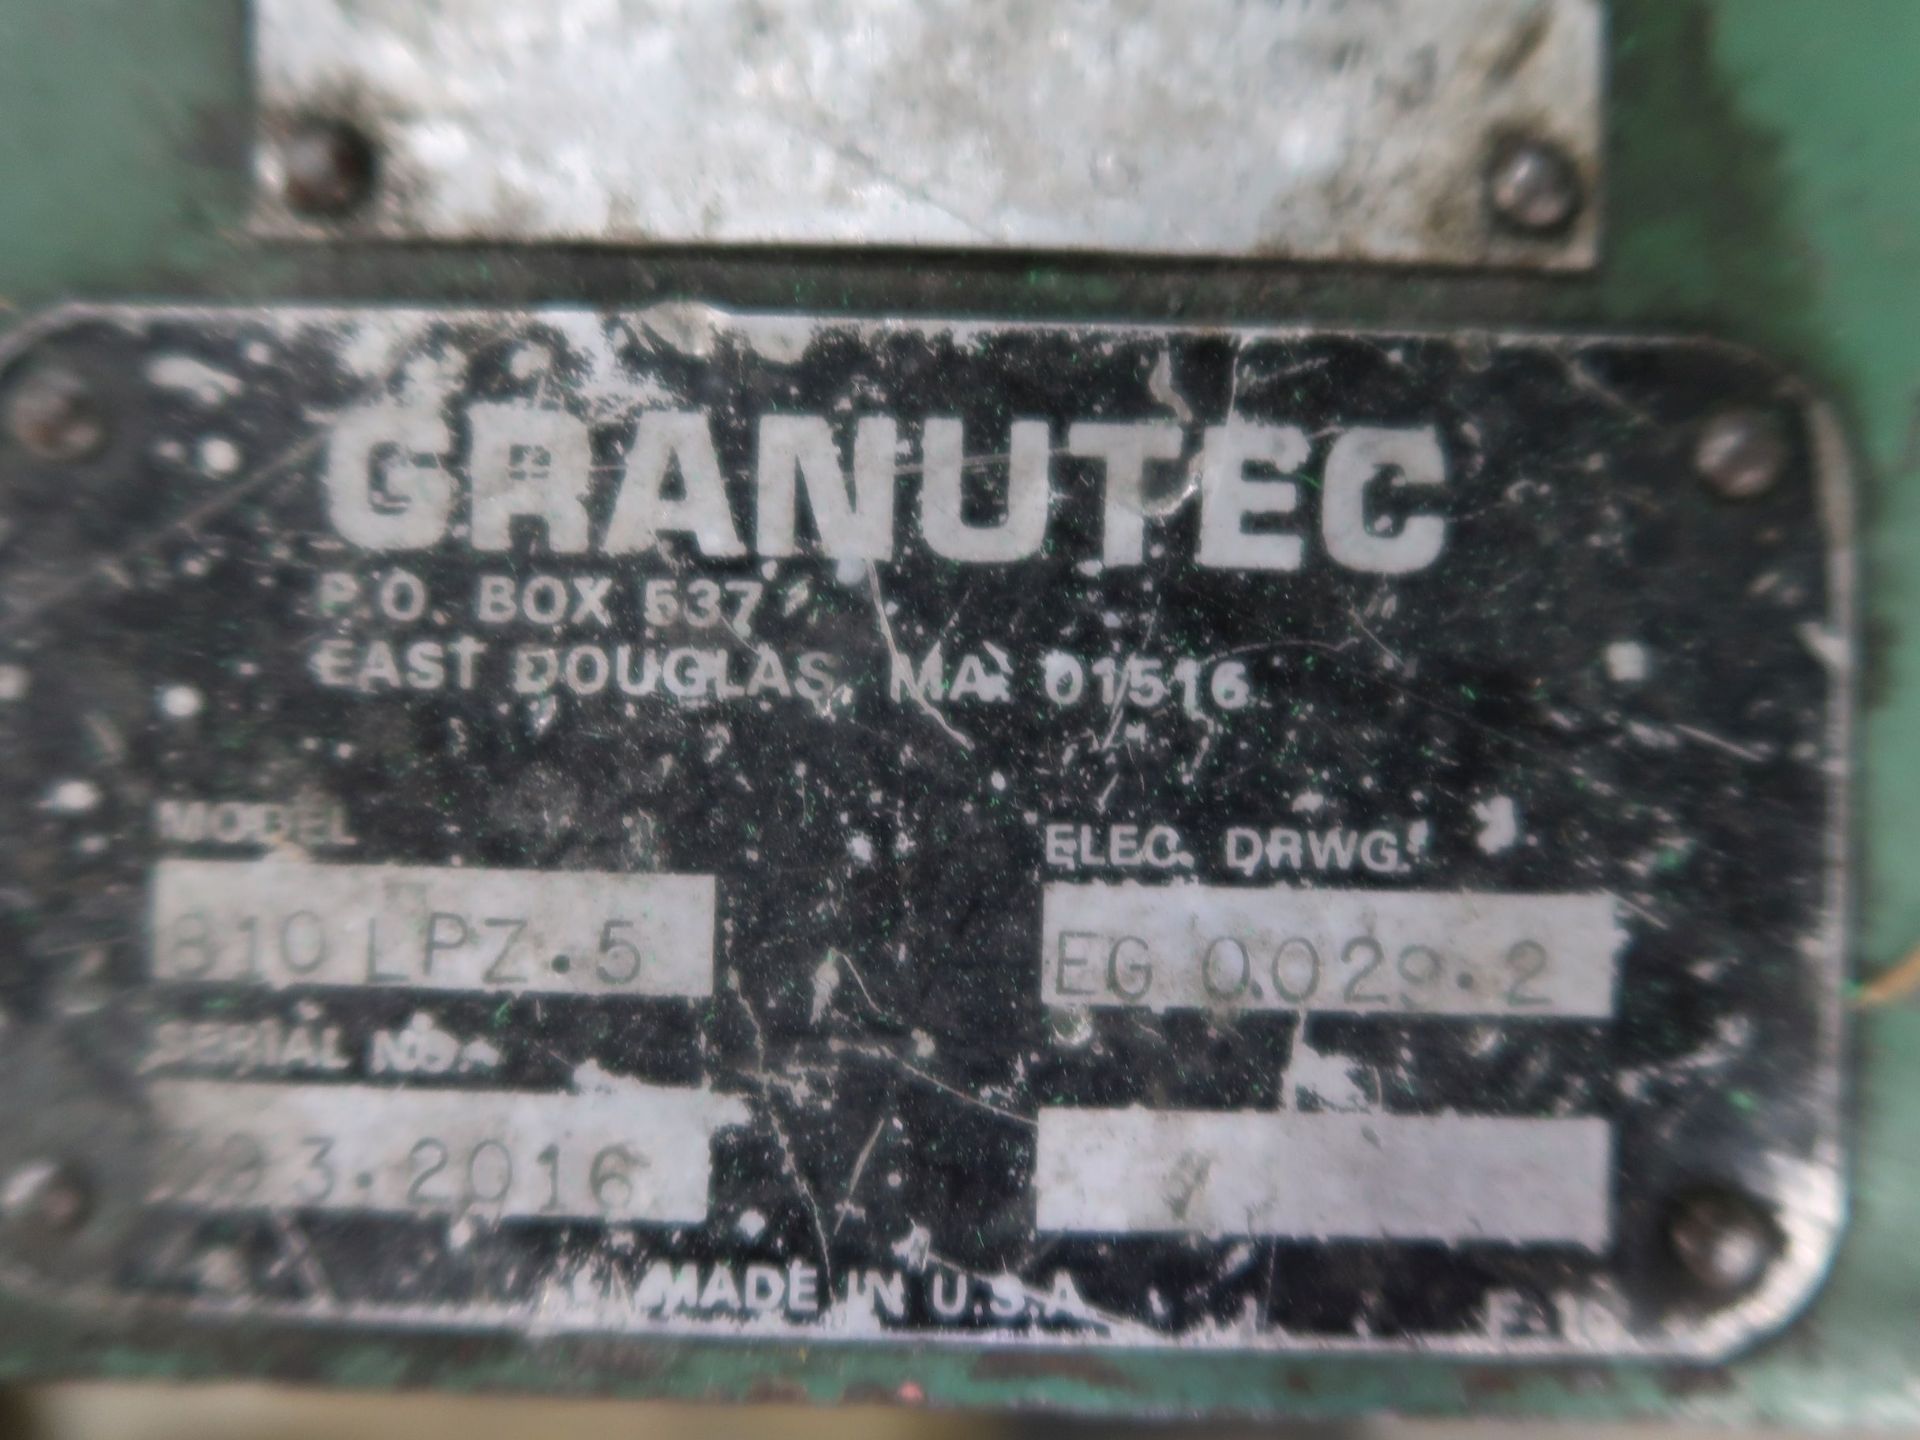 5 HP GRANUTEC MODEL 810LPZ-5 GRANULATOR; S/N 393-2016 - Image 5 of 5